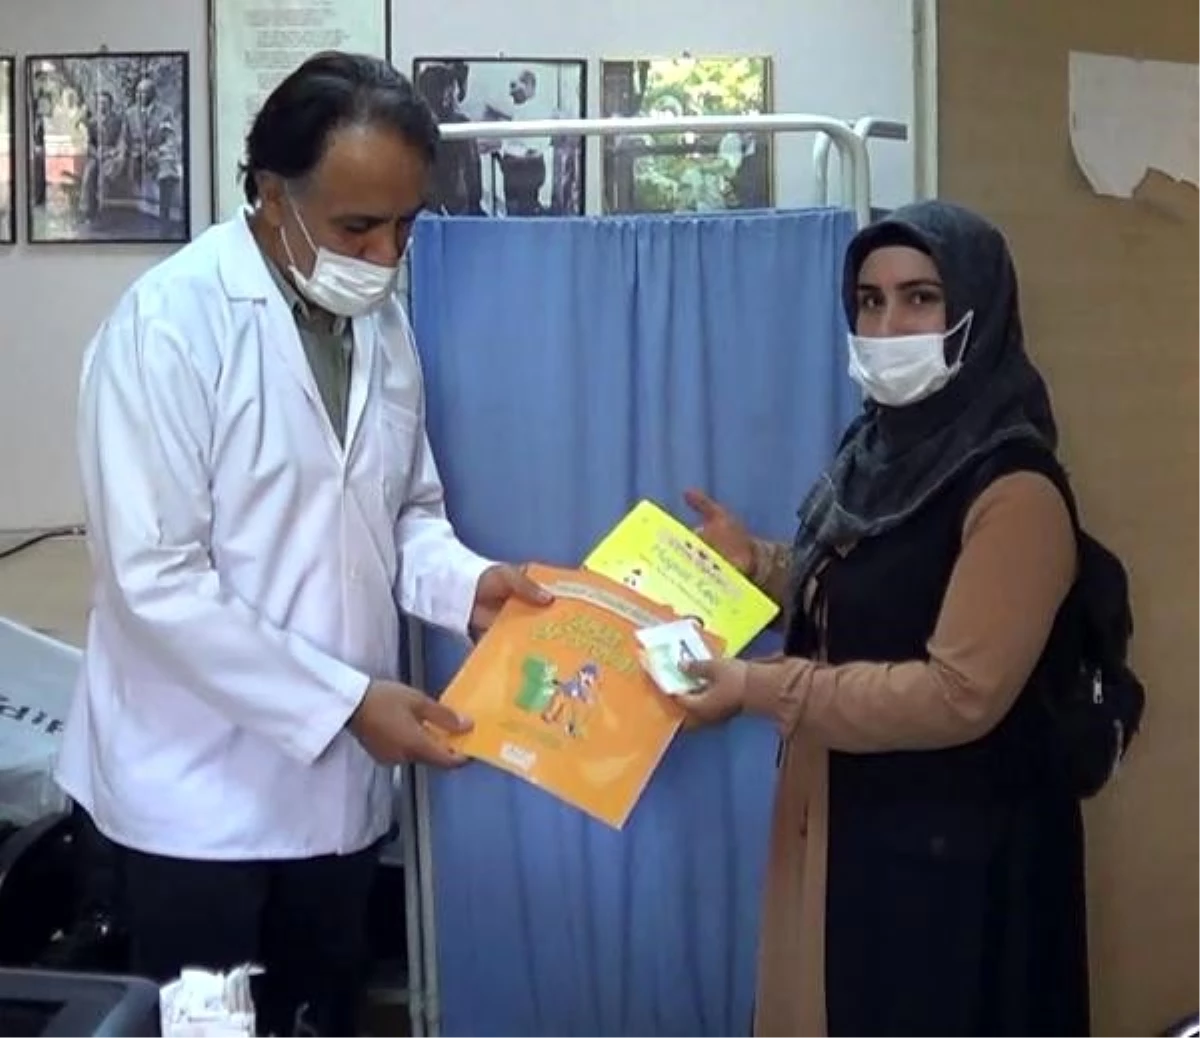 Hastalarına kitap dağıtan aile hekimi, kardelenlere de kitaplık yaptırıyor